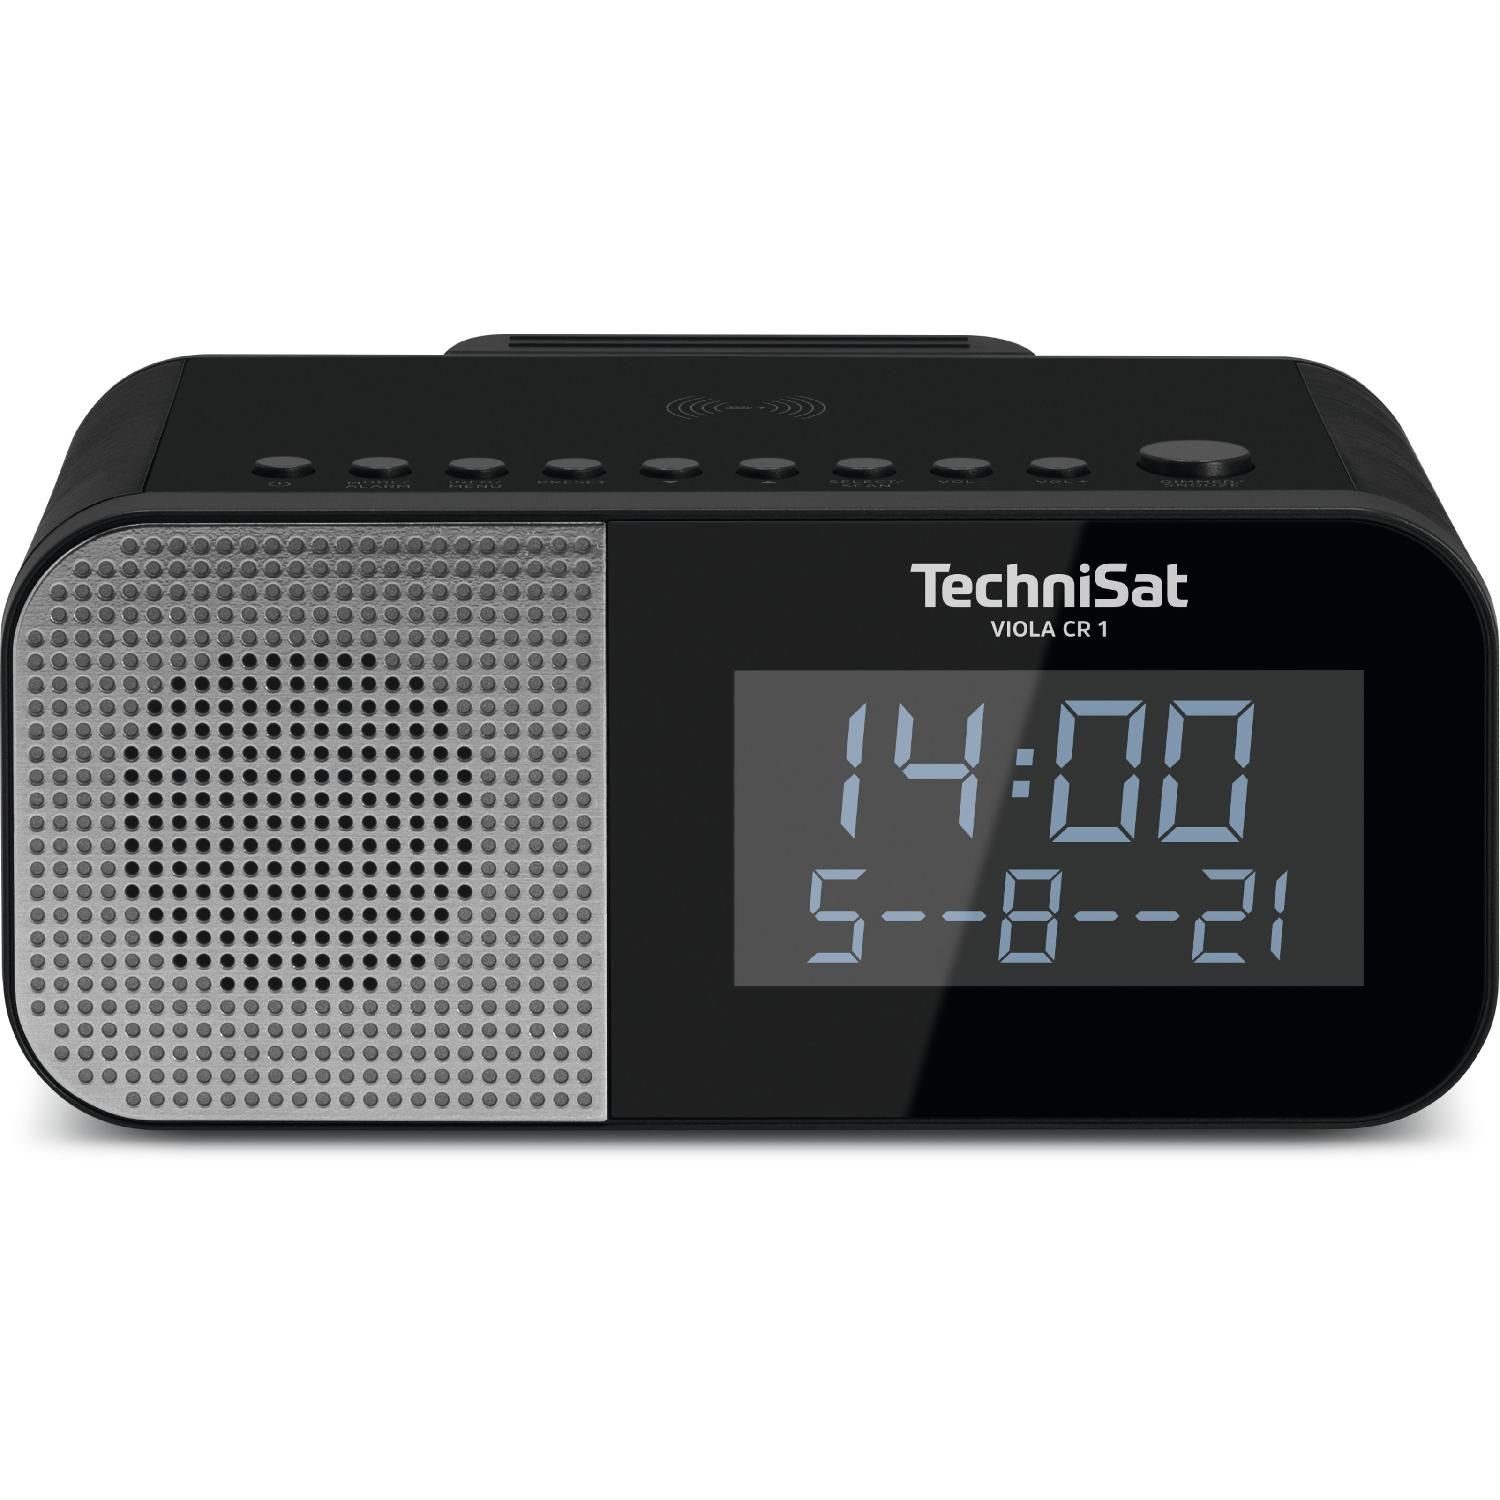 TechniSat VIOLA CR 1 D Wireless TechniSat Datumsanzeige, Digitalradio UKW-Radio Zwei Digitalradio, und (DAB) Radiowecktimer Uhr- Display Charging (DAB+ möglich)